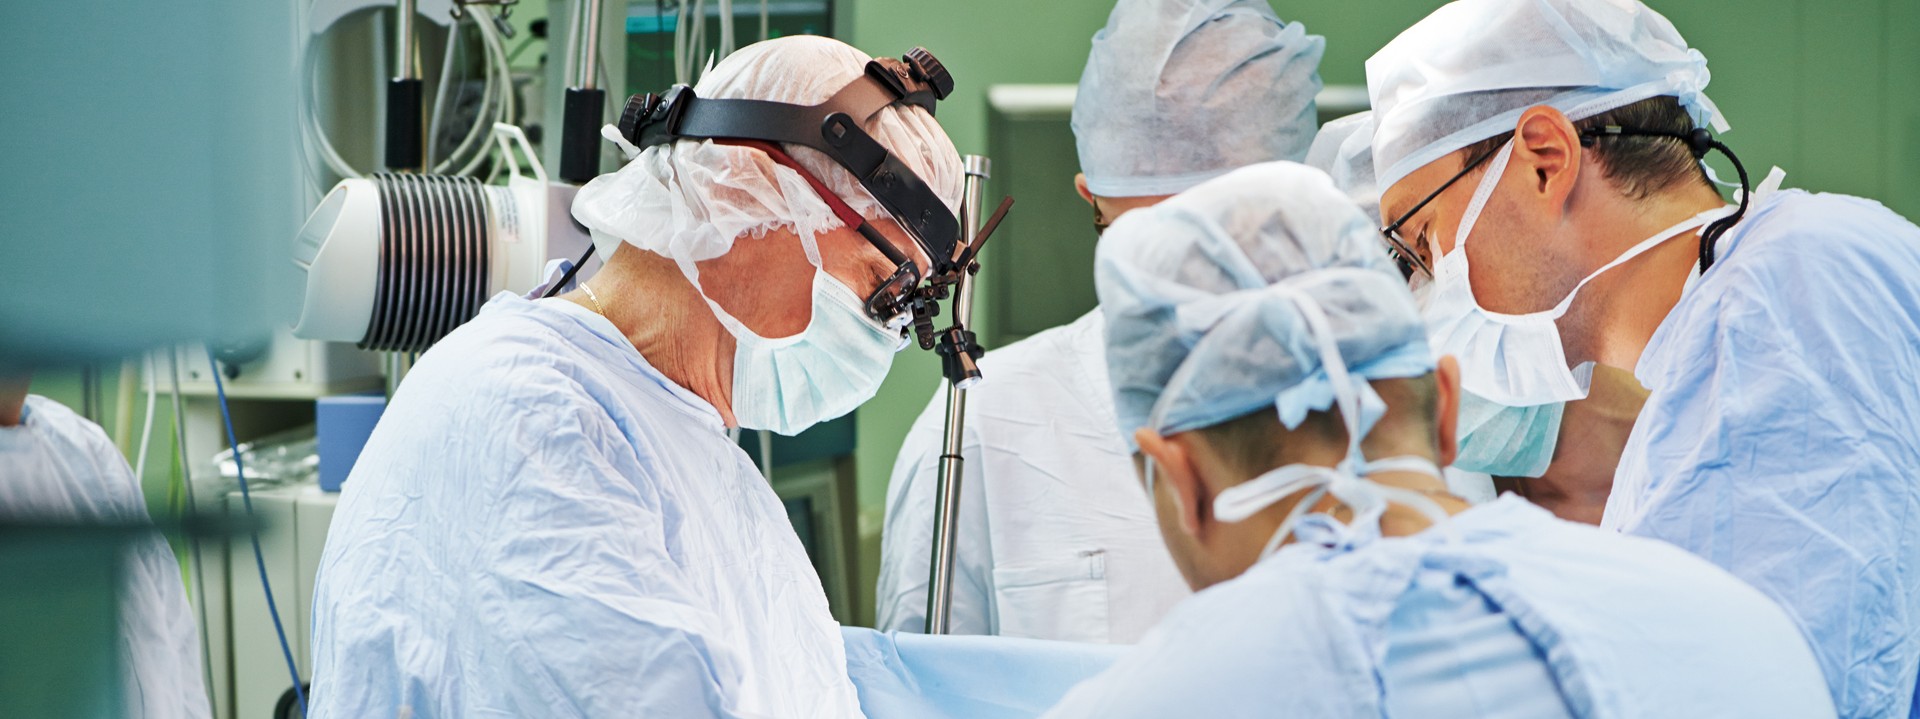 Mehrere Ärzte stehen mit OP-Kitteln in einem Operationssaal und operieren einen Patienten.